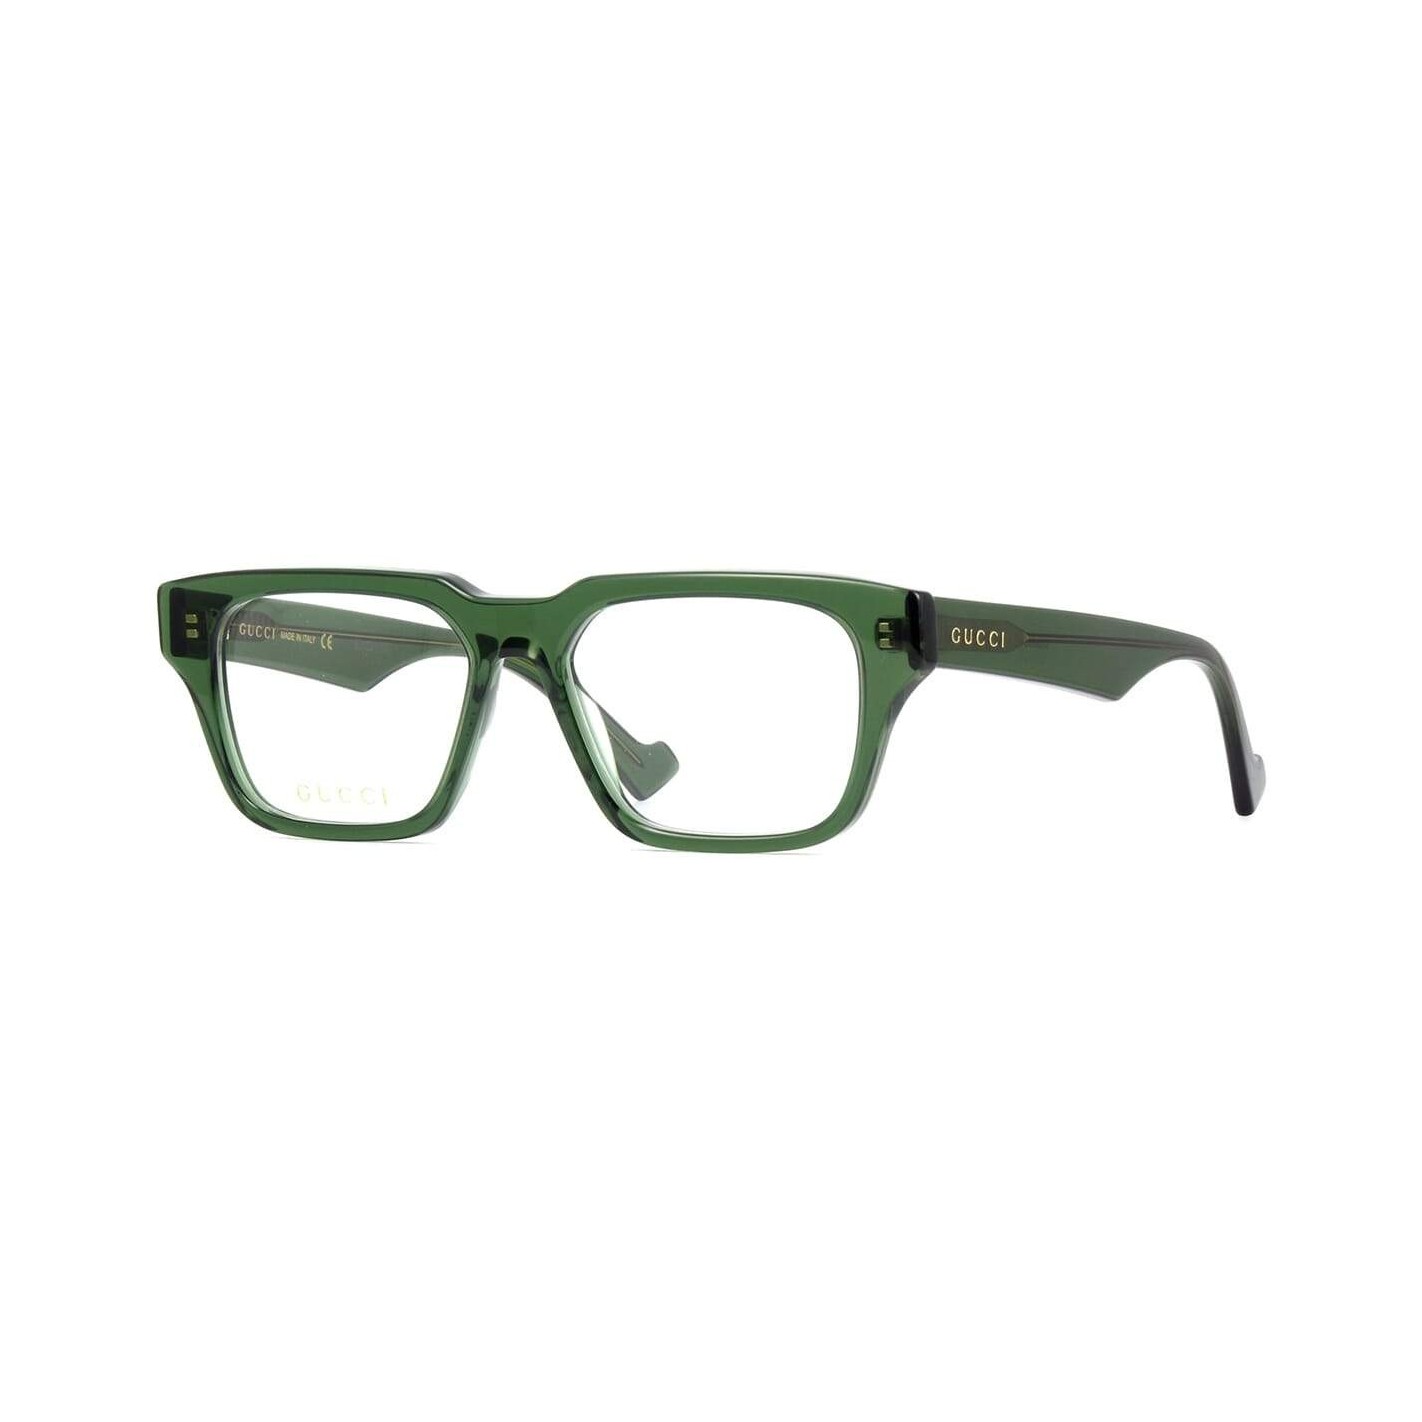 agencia borde página Estás gafas de Lujo te marcarán la diferencia combinandolas con tu look más  exclusivo. Las gafas Gucci presentan extravagancia,